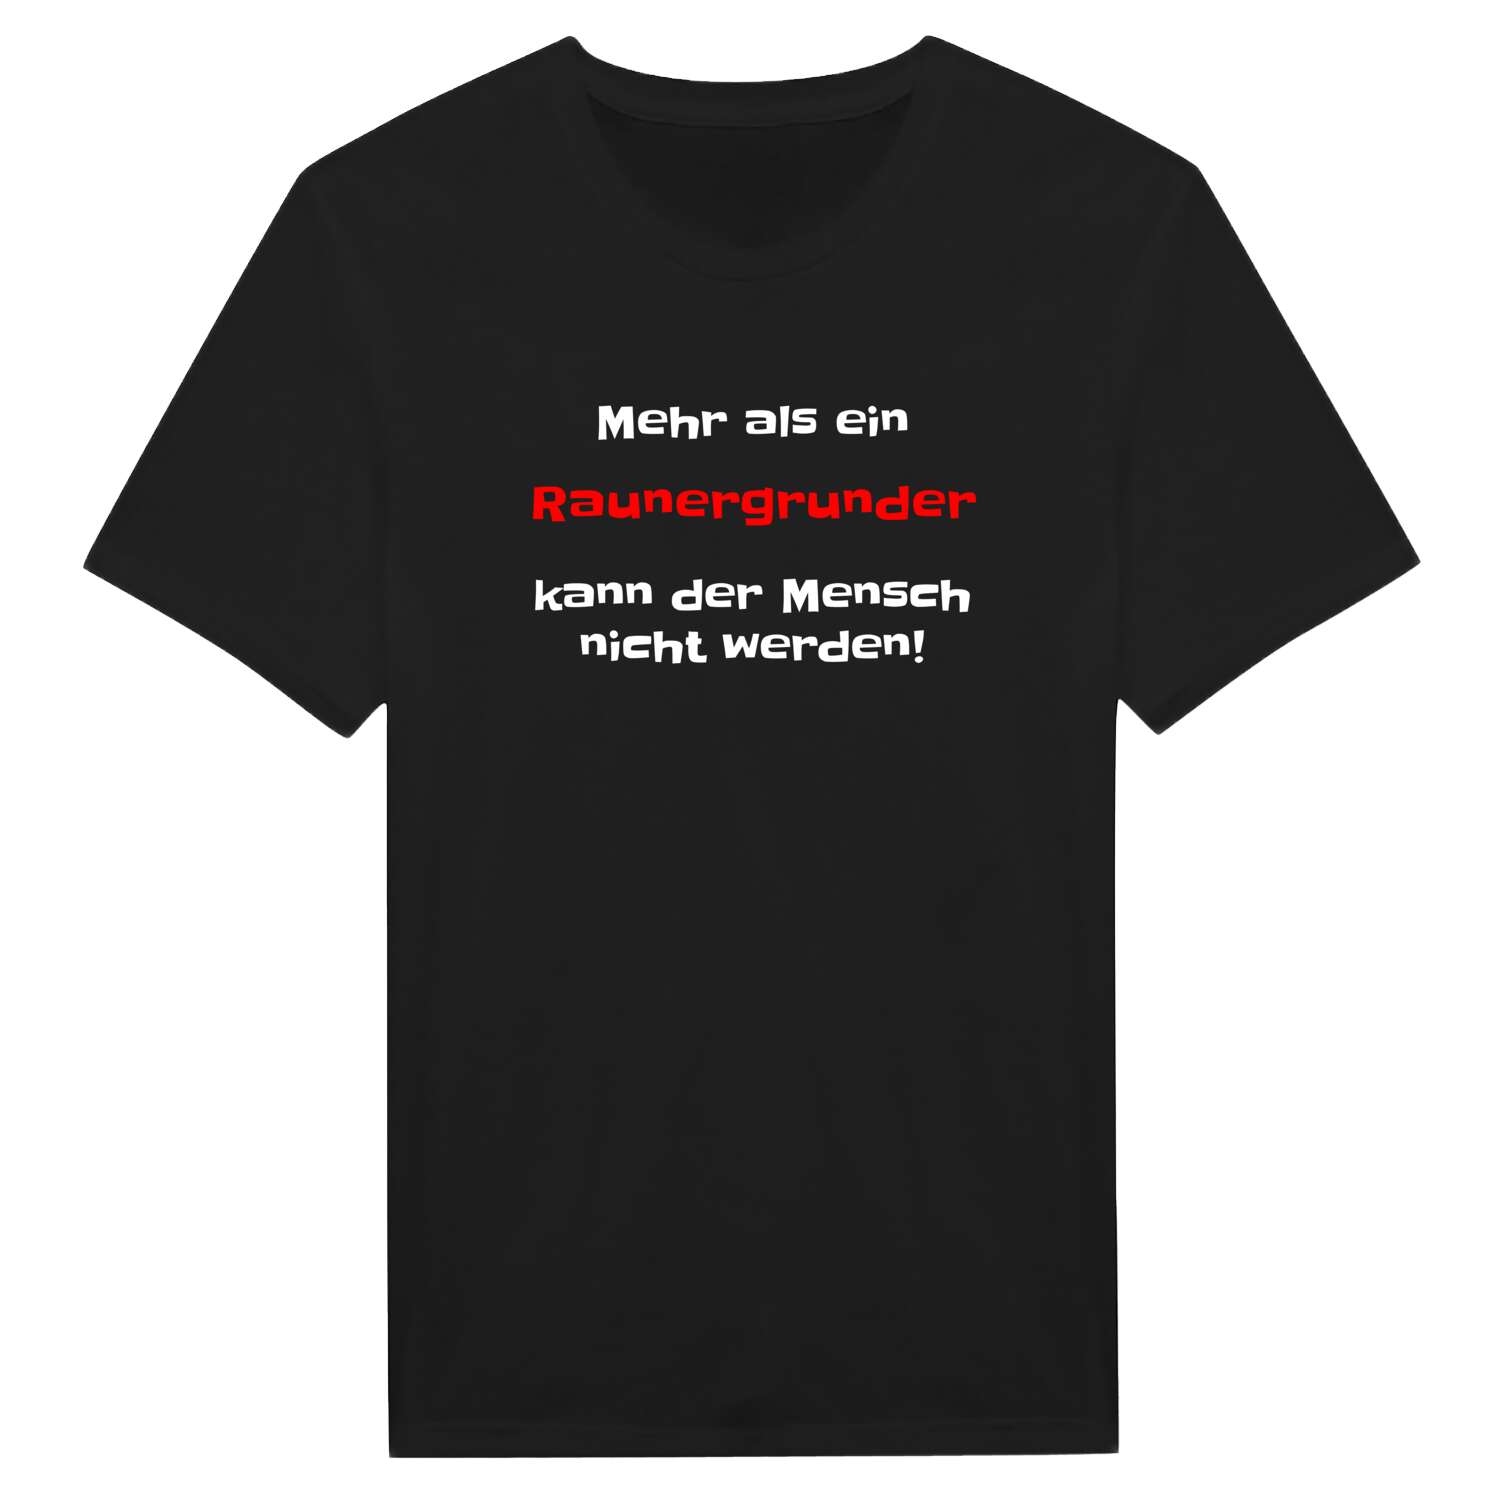 Raunergrund T-Shirt »Mehr als ein«